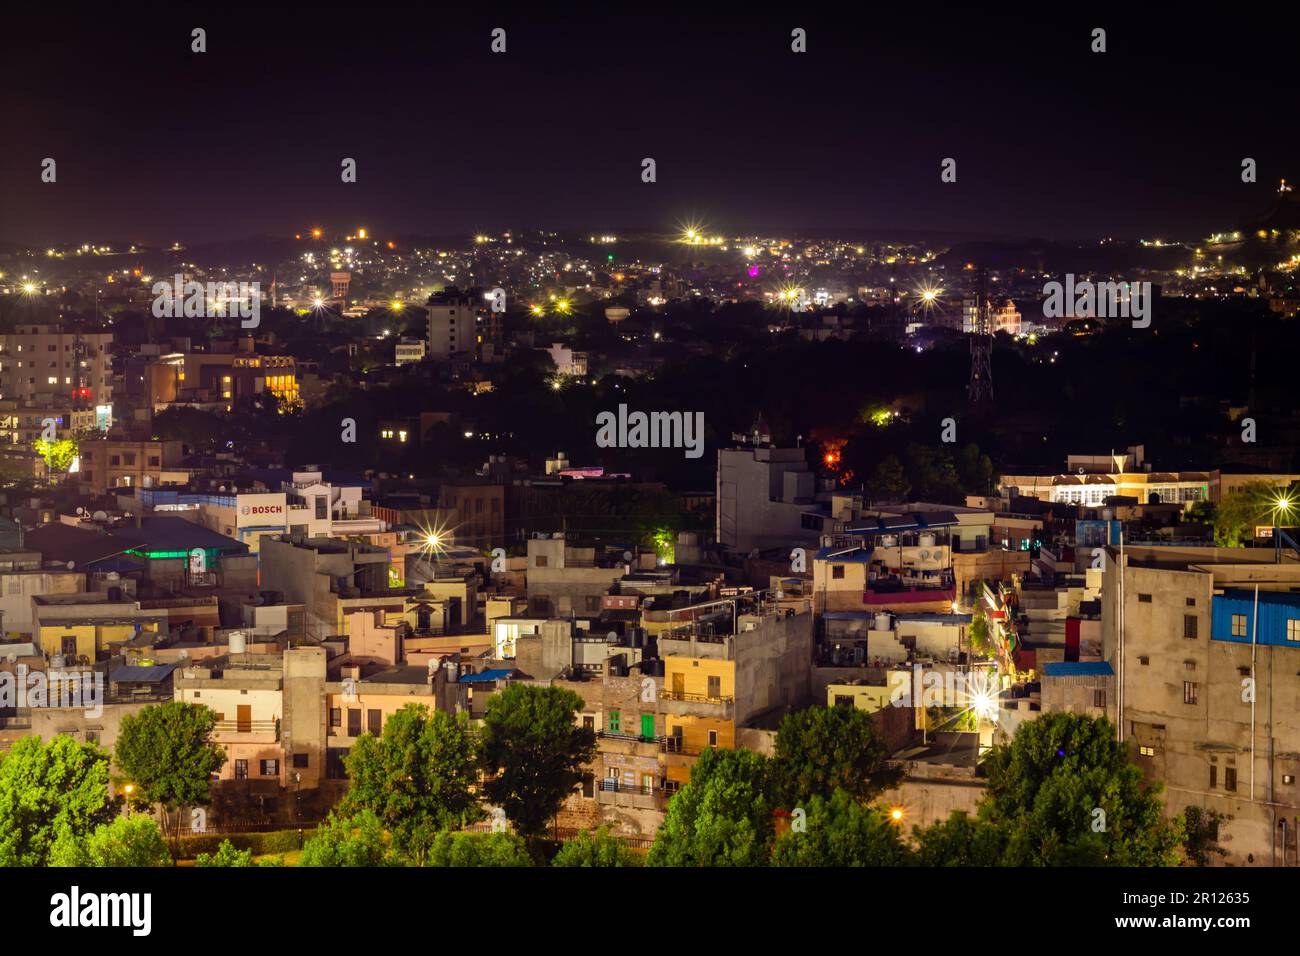 Am 05 2023. Mai wird im jodhpur rajasthan india ein Bild der nächtlichen Stadtlandschaft mit Lichtern bei Nacht aufgenommen. Stockfoto